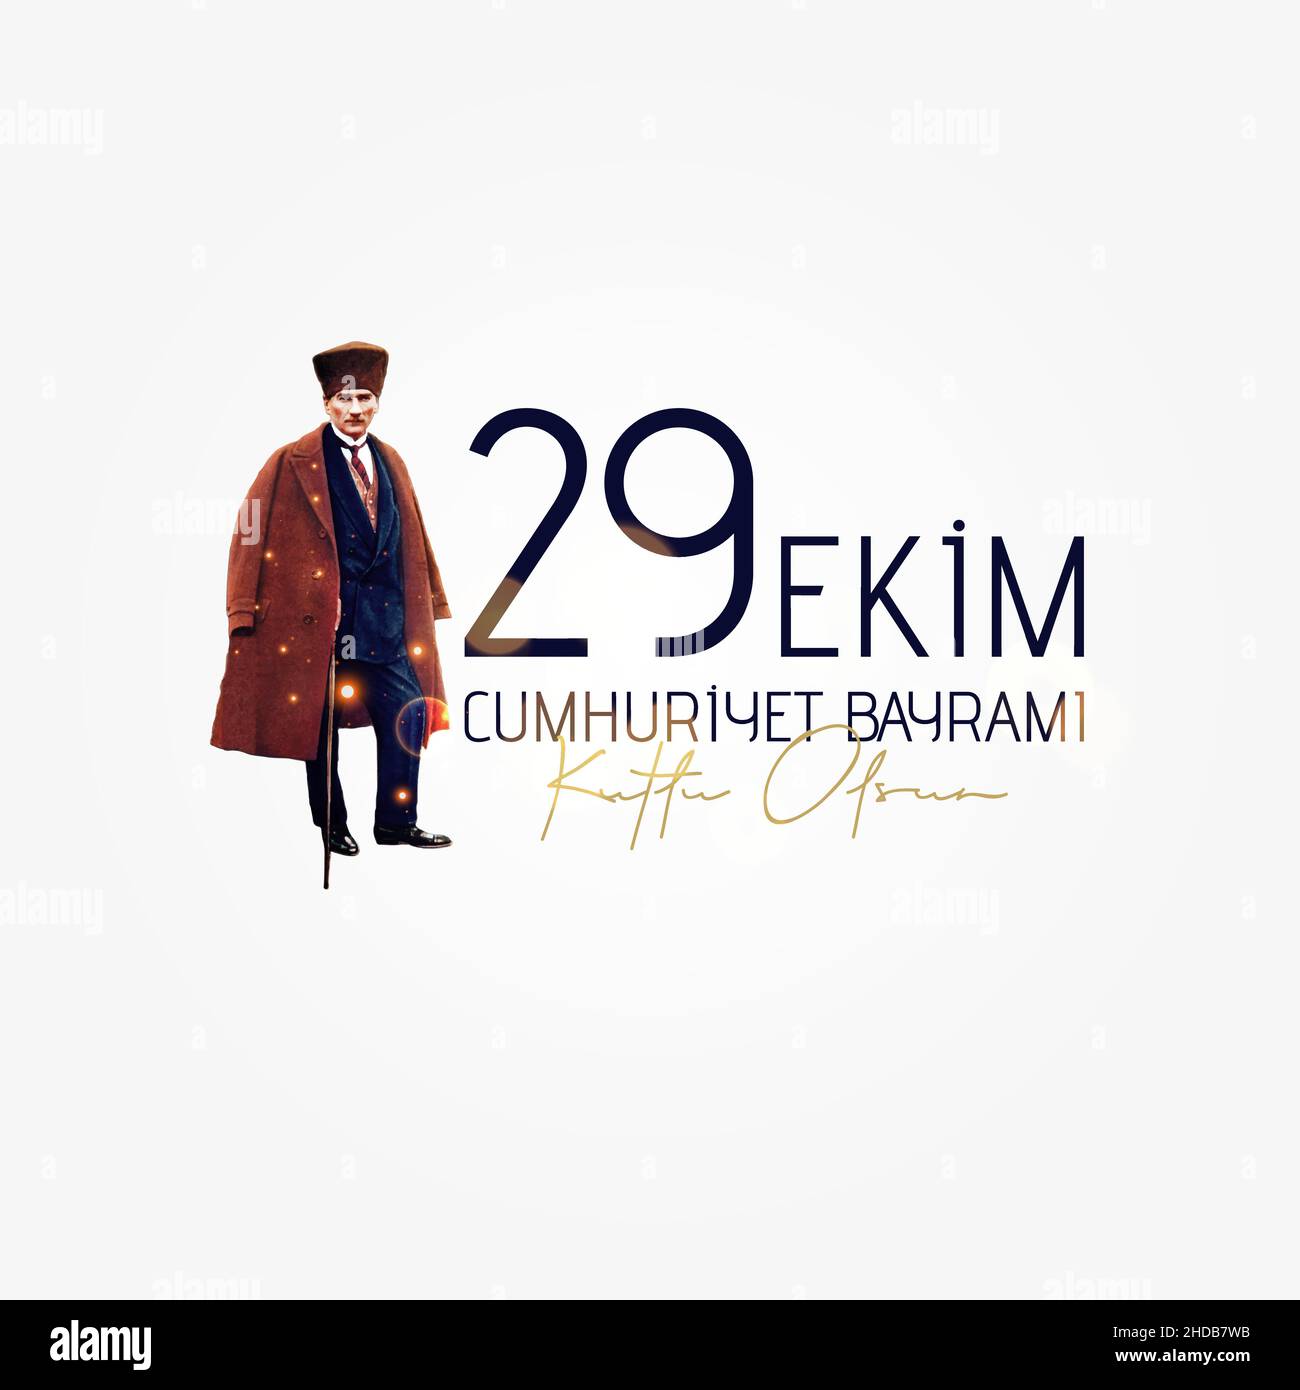 29 Ekim Cumhuriyet Bayram Kutlu Olsun. October 29 Turkey Republic Day. Stock Vector